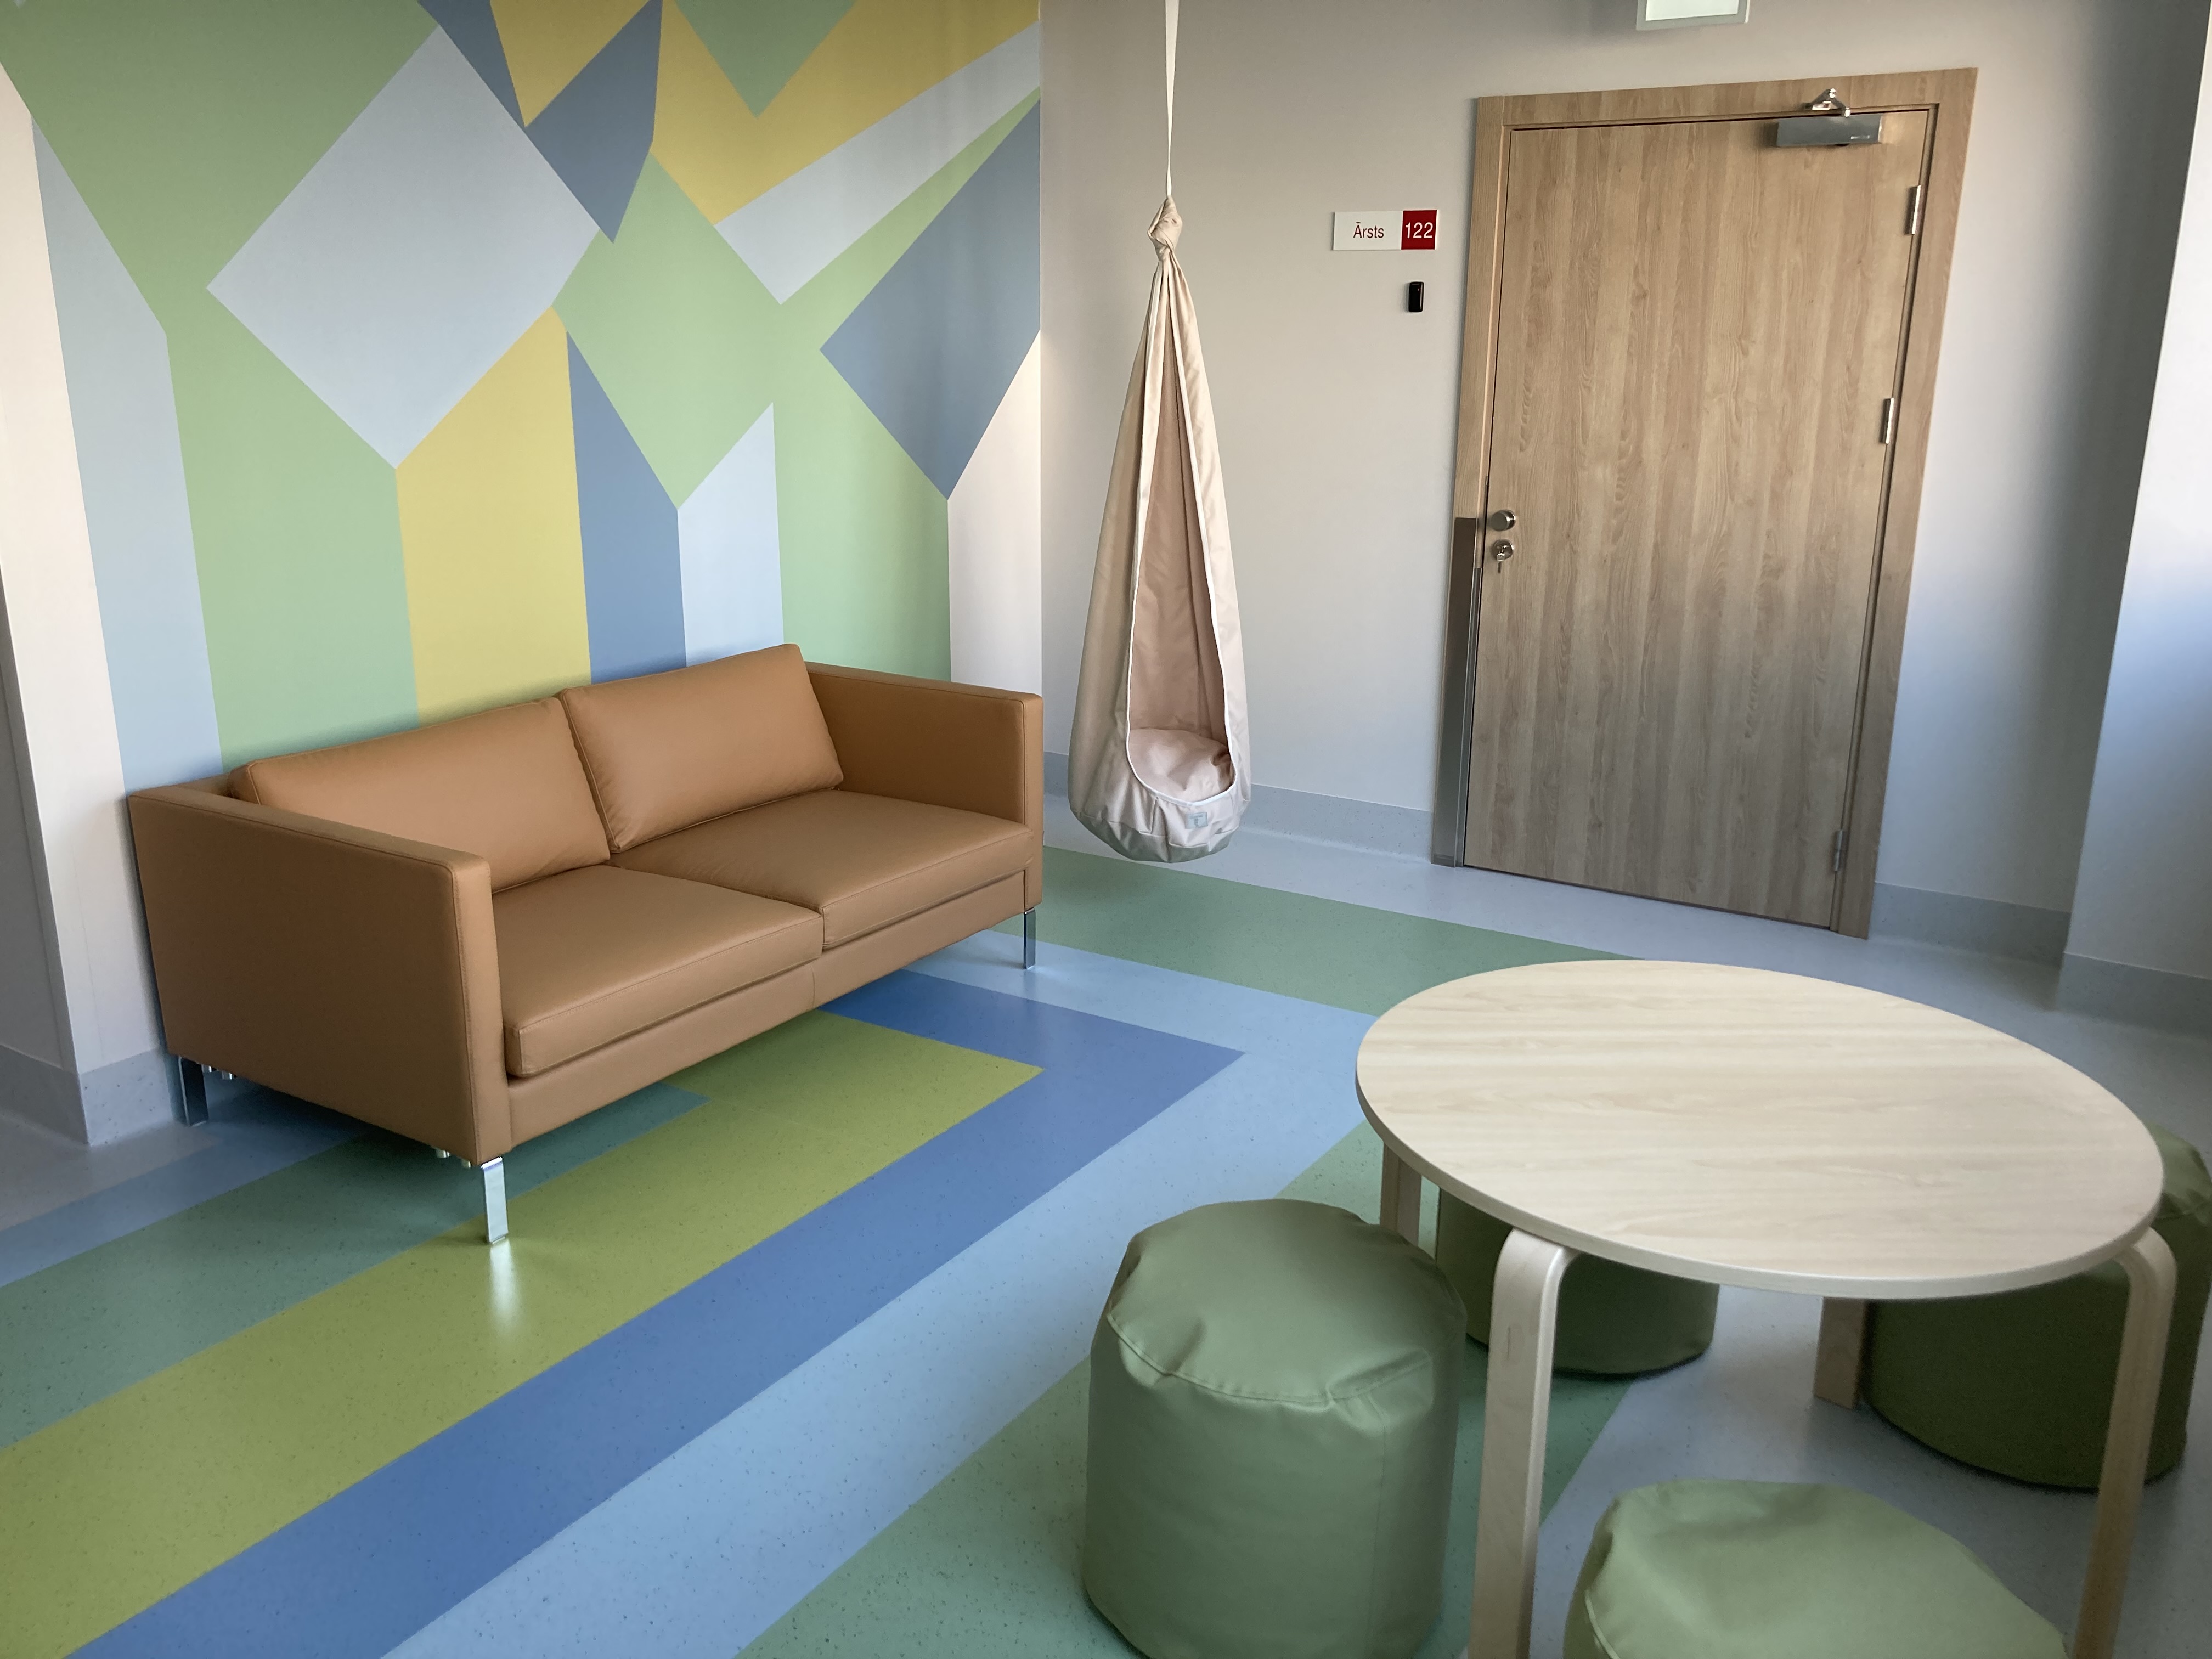 Bērnu veselības centra ambulatorās pediatrijas kabinetu uzgaidāmā telpa iekārtota tā, lai vecāki ar bērniem justos mājīgi